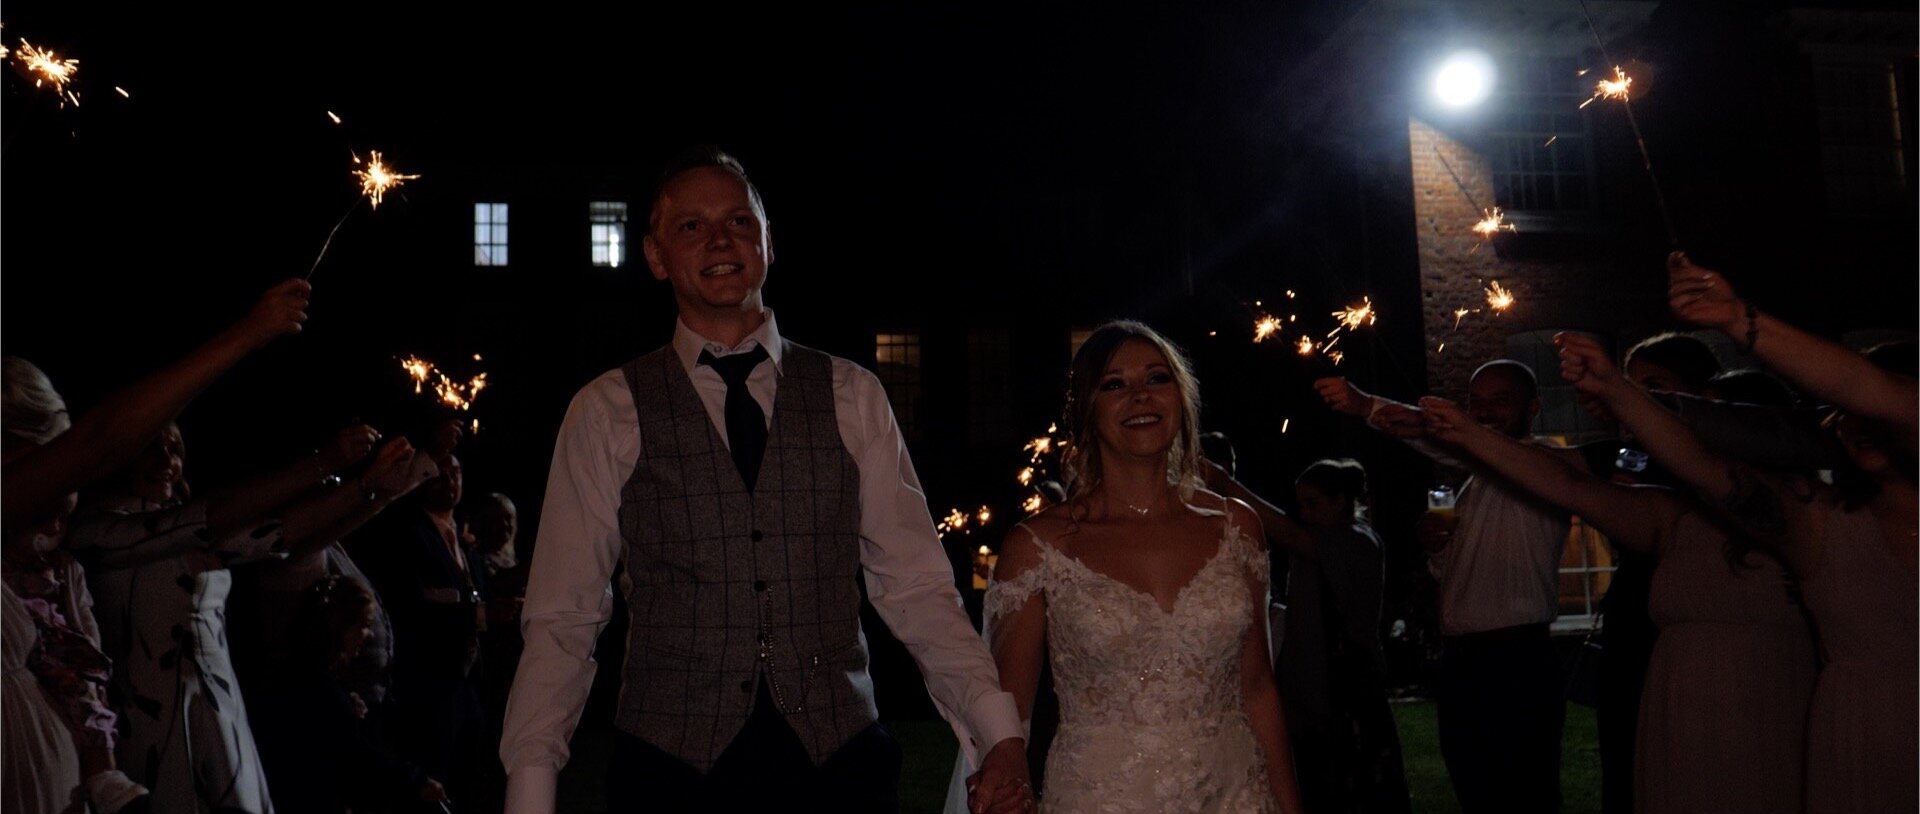 Essex wedding videos sparklers at night.jpg